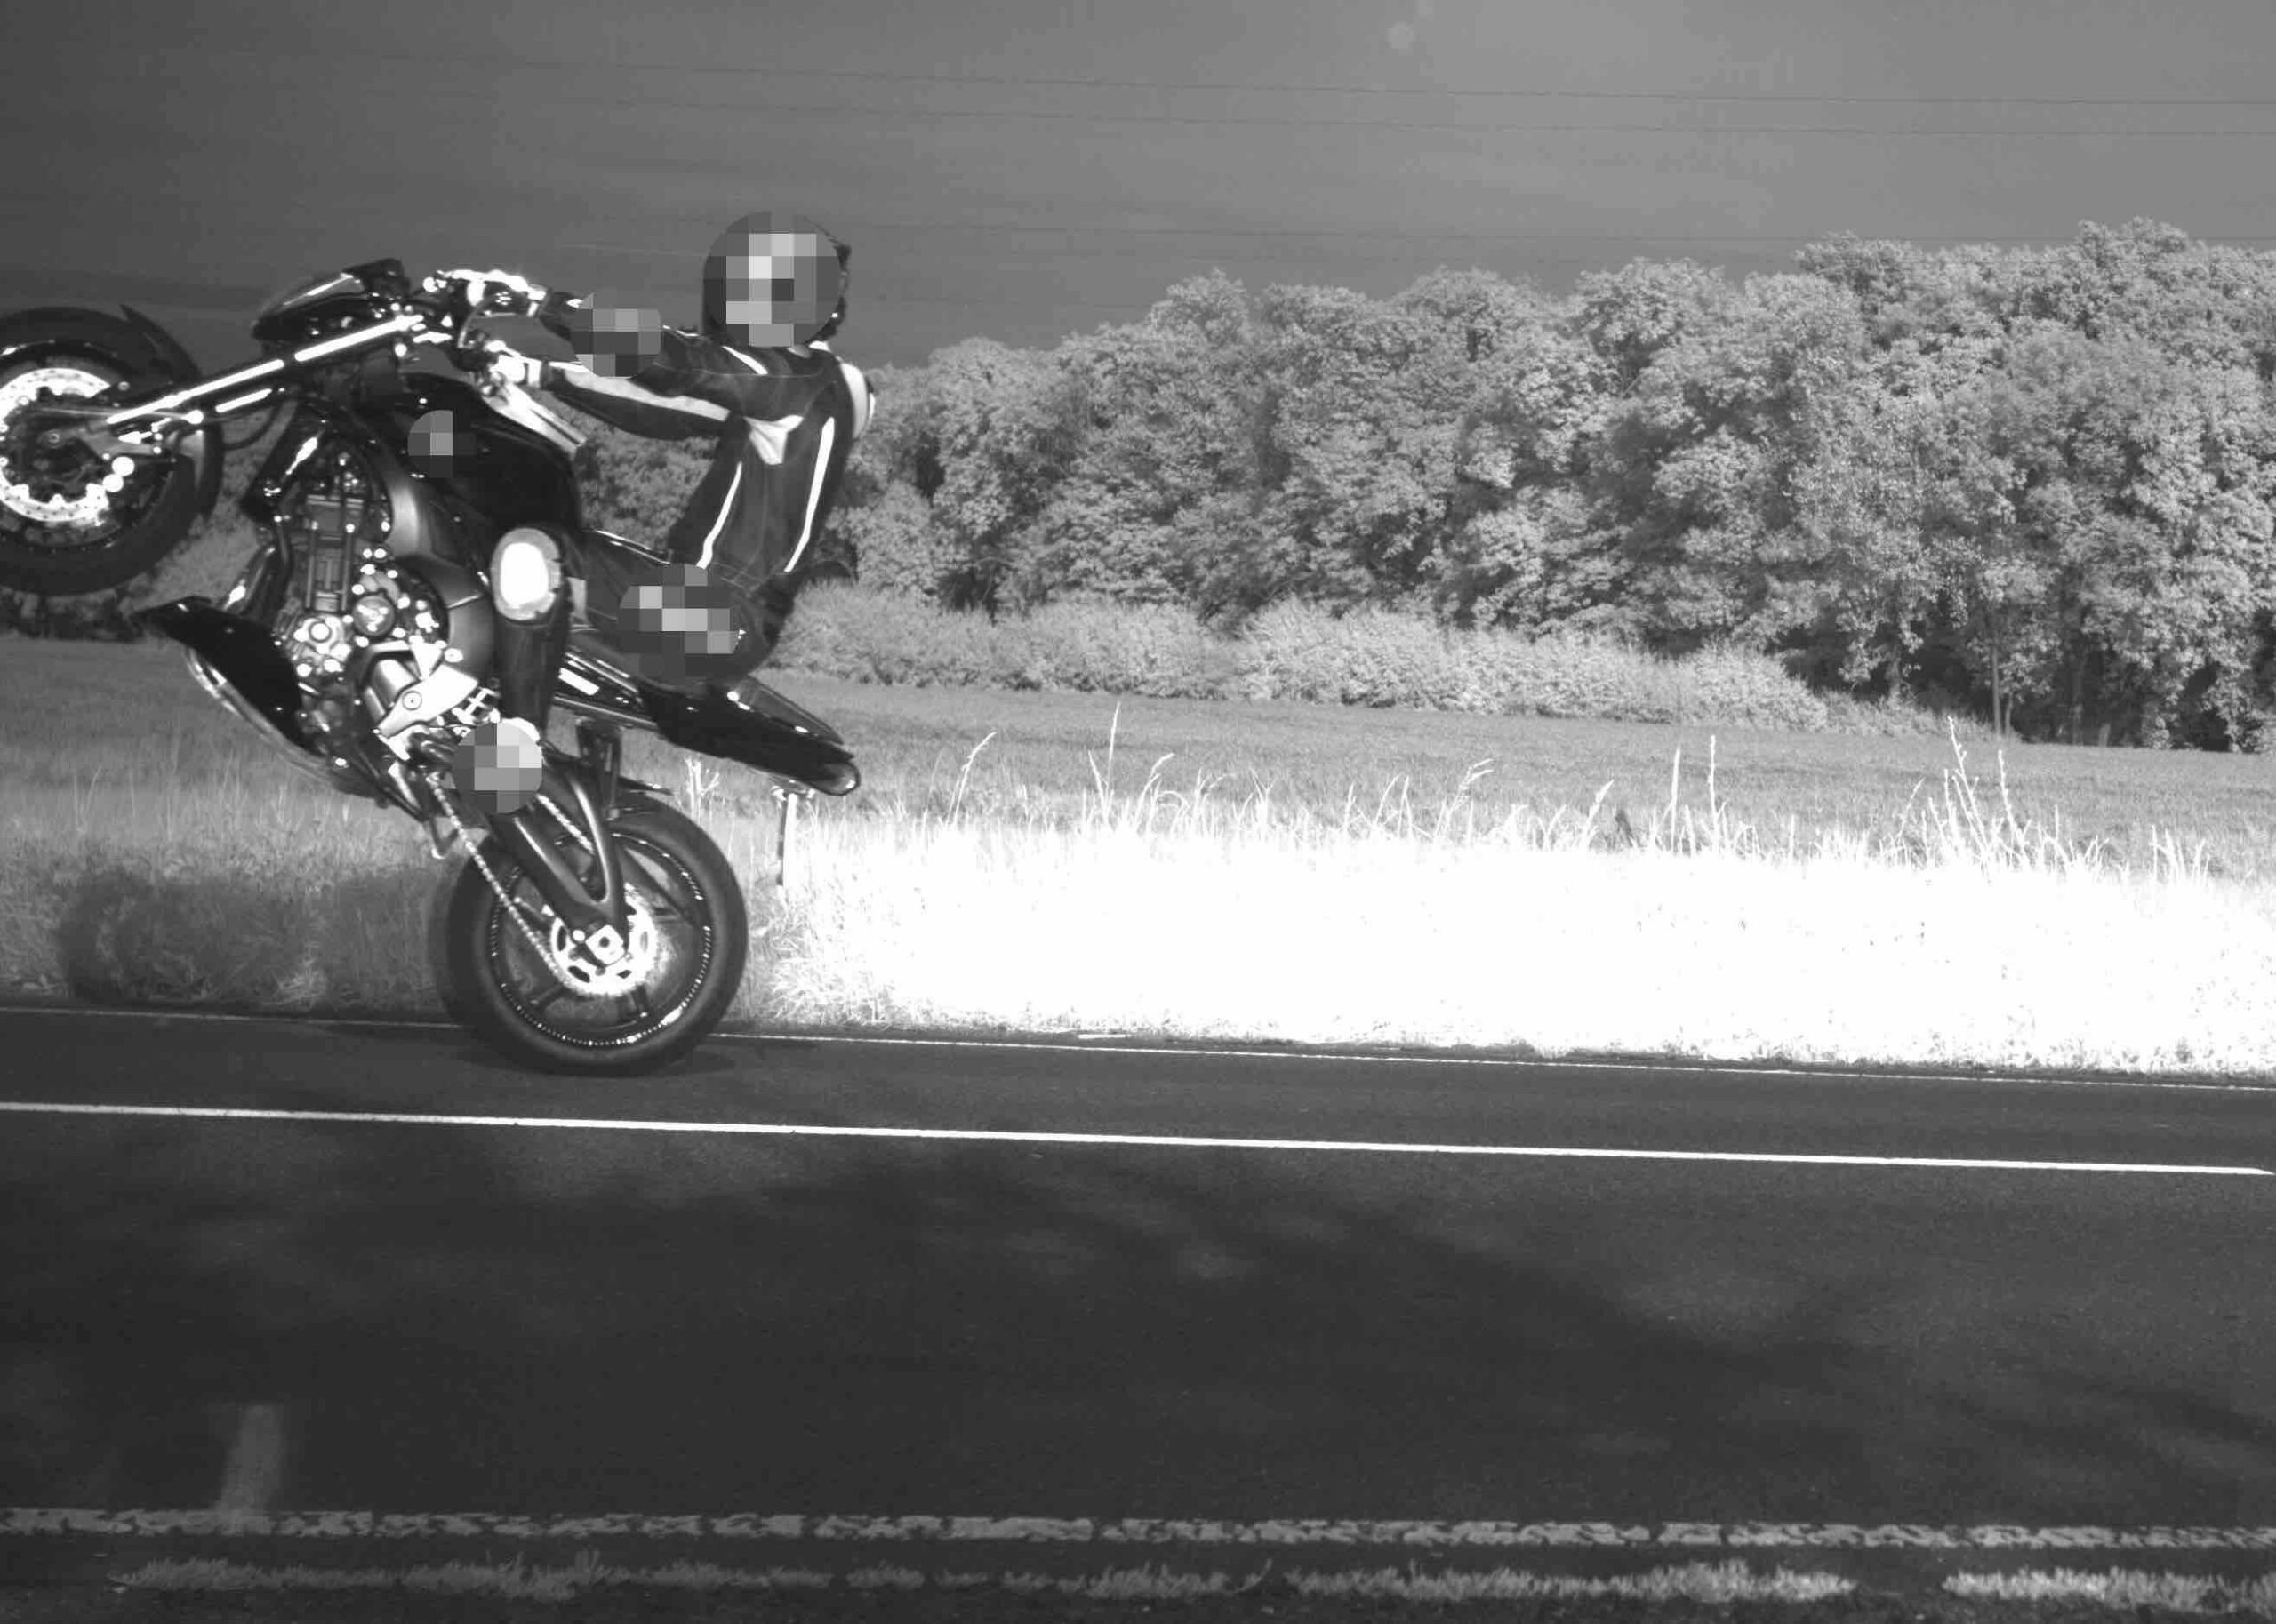 Mit 143 Sachen und nur auf einem Rad unterwegs: Ein mobiler Blitzer hielt diesen Stunt eines Motorradfahrers im westfälischen Hamm fest.